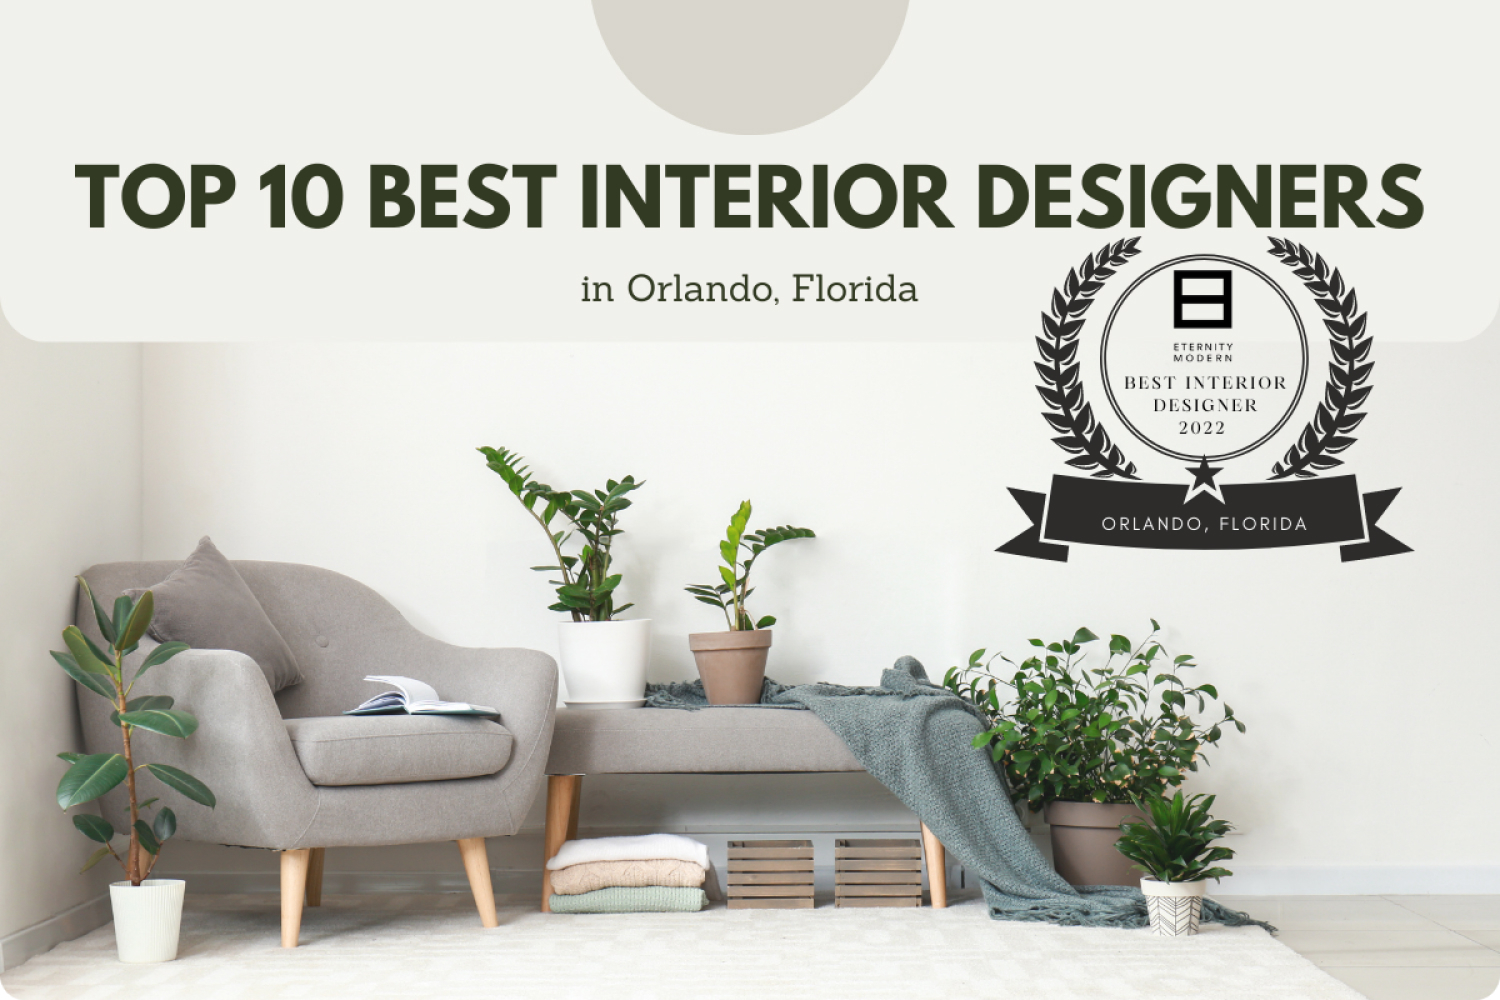 Top 10 Best Interior Designers in Orlando, Florida